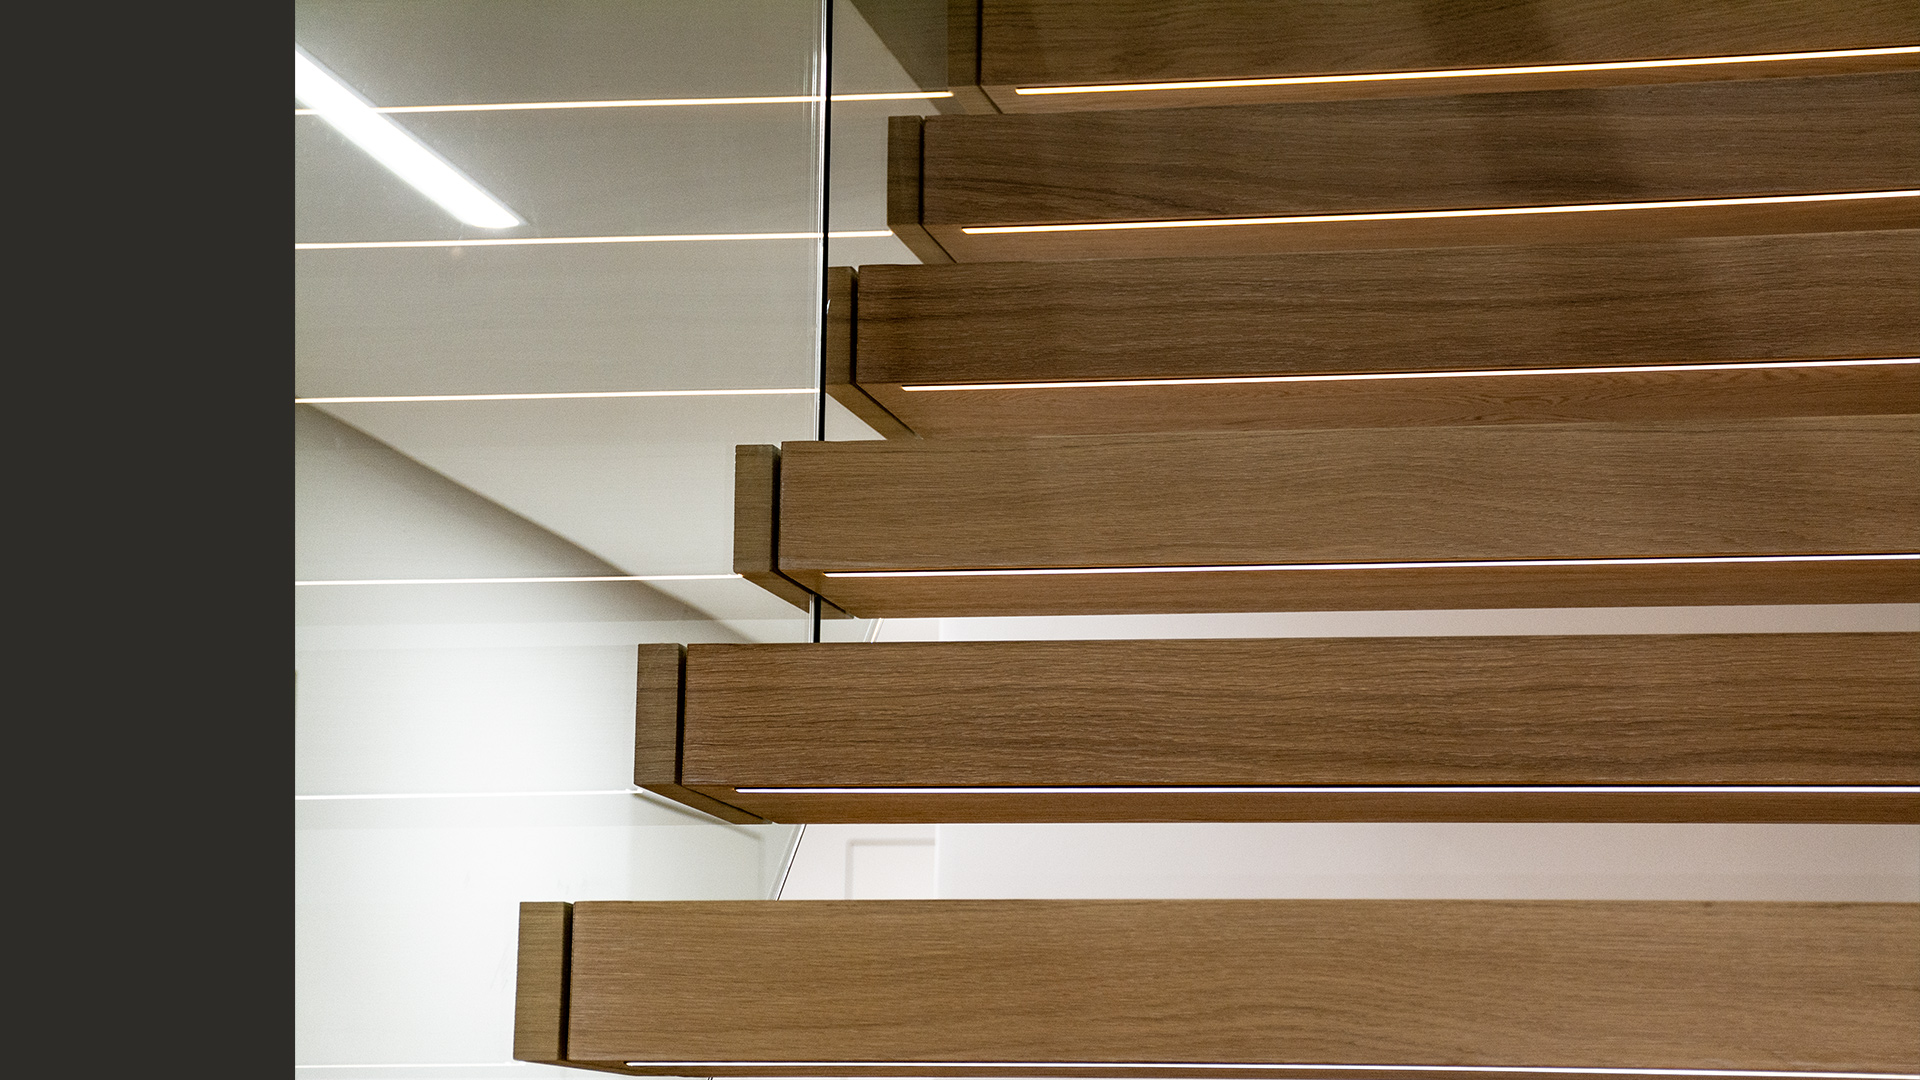 Każdy ze stopni schodów posiada podświetlenie LED, gwarantujące bezpieczeństwo po zmroku.